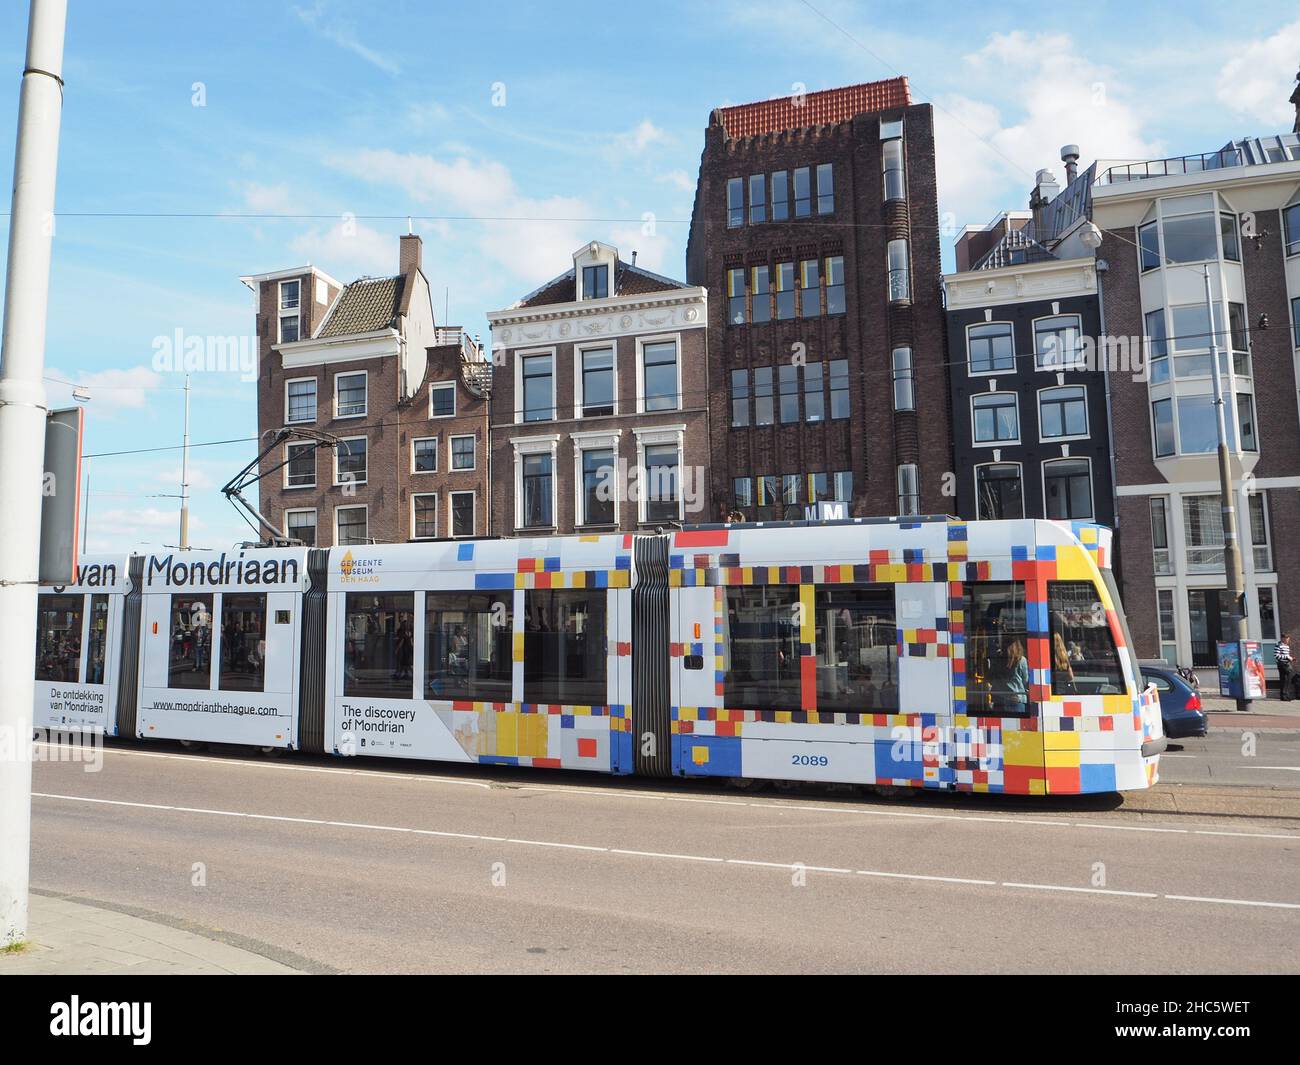 Blick auf eine farbenfrohe Straßenbahn, die die Straßen von Amsterdam überquert Stockfoto